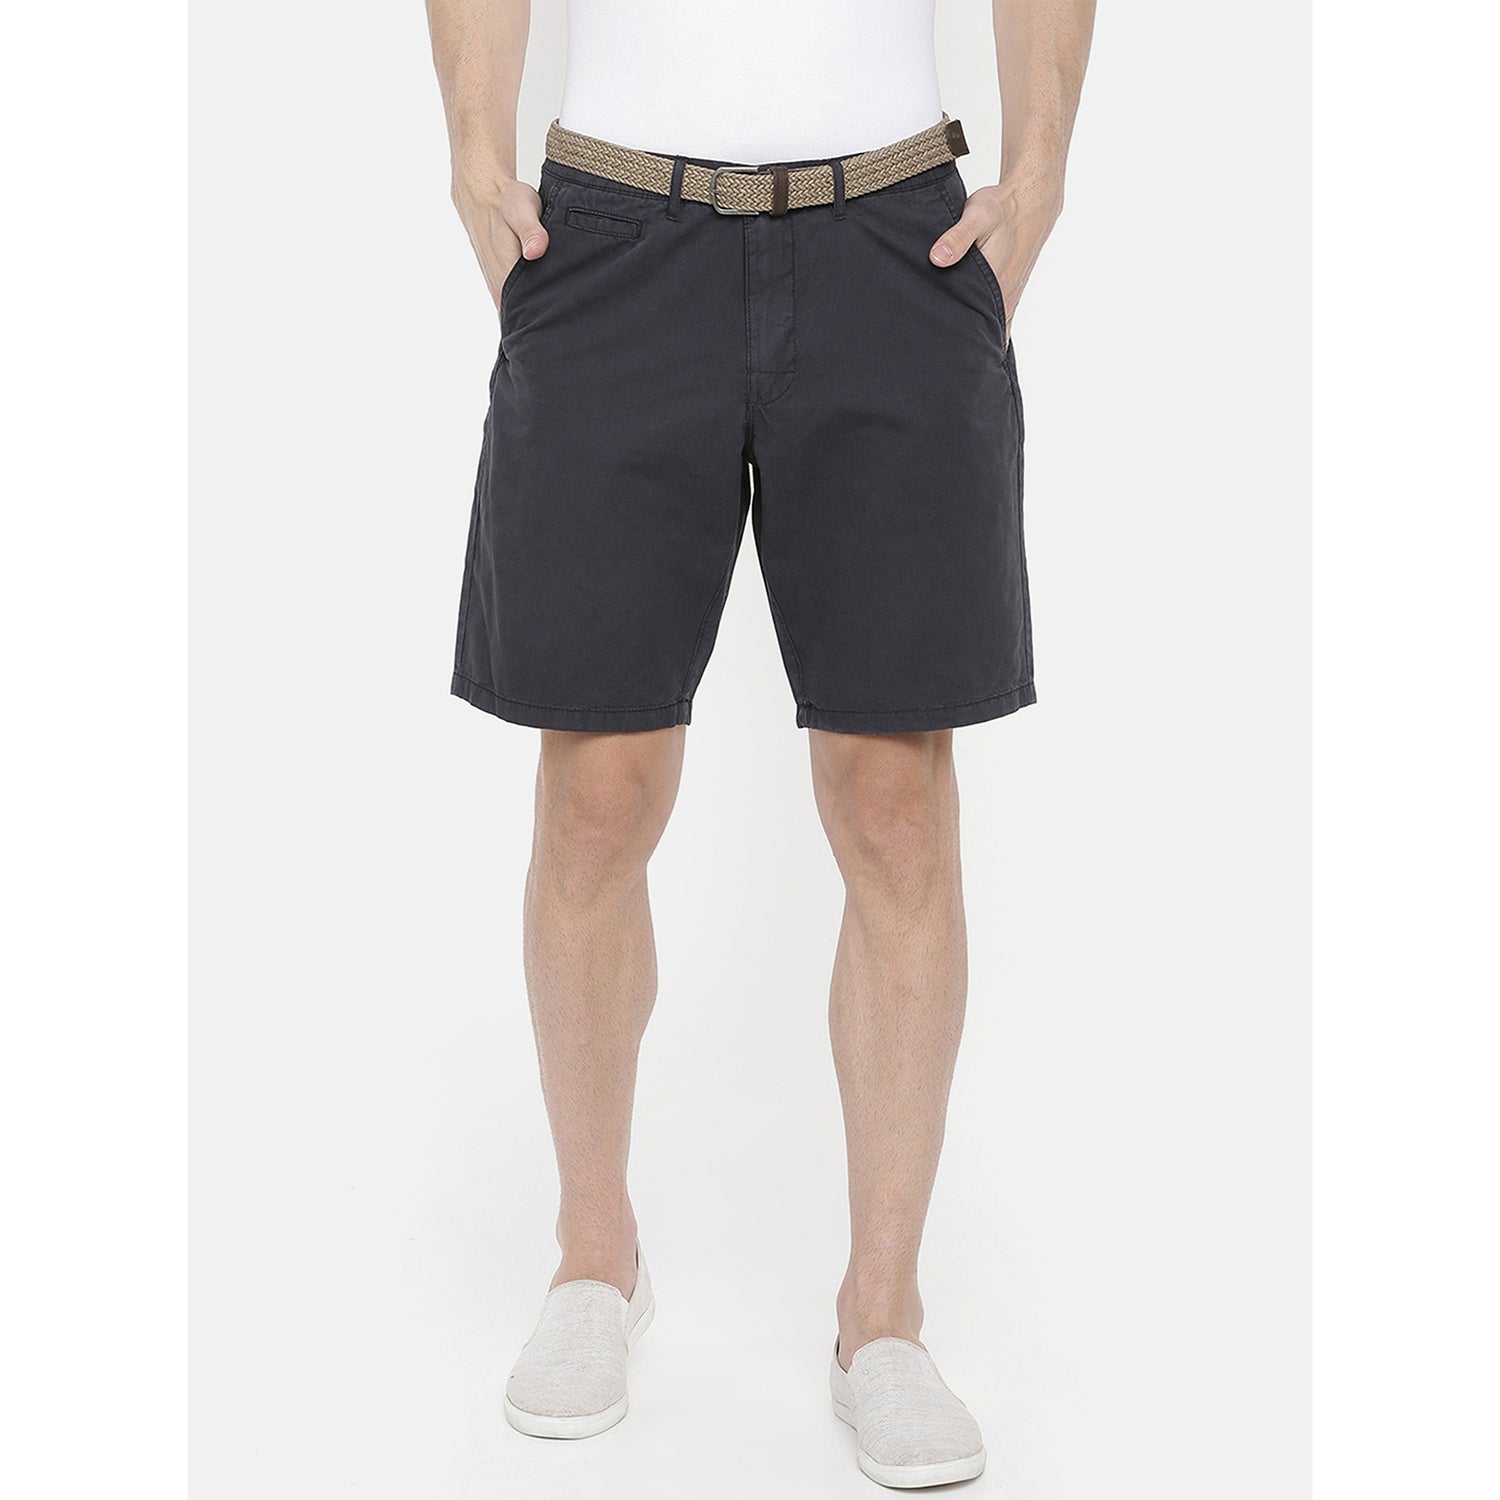 Men's Blue Cotton Solid Shorts (NOSLACKBMI)